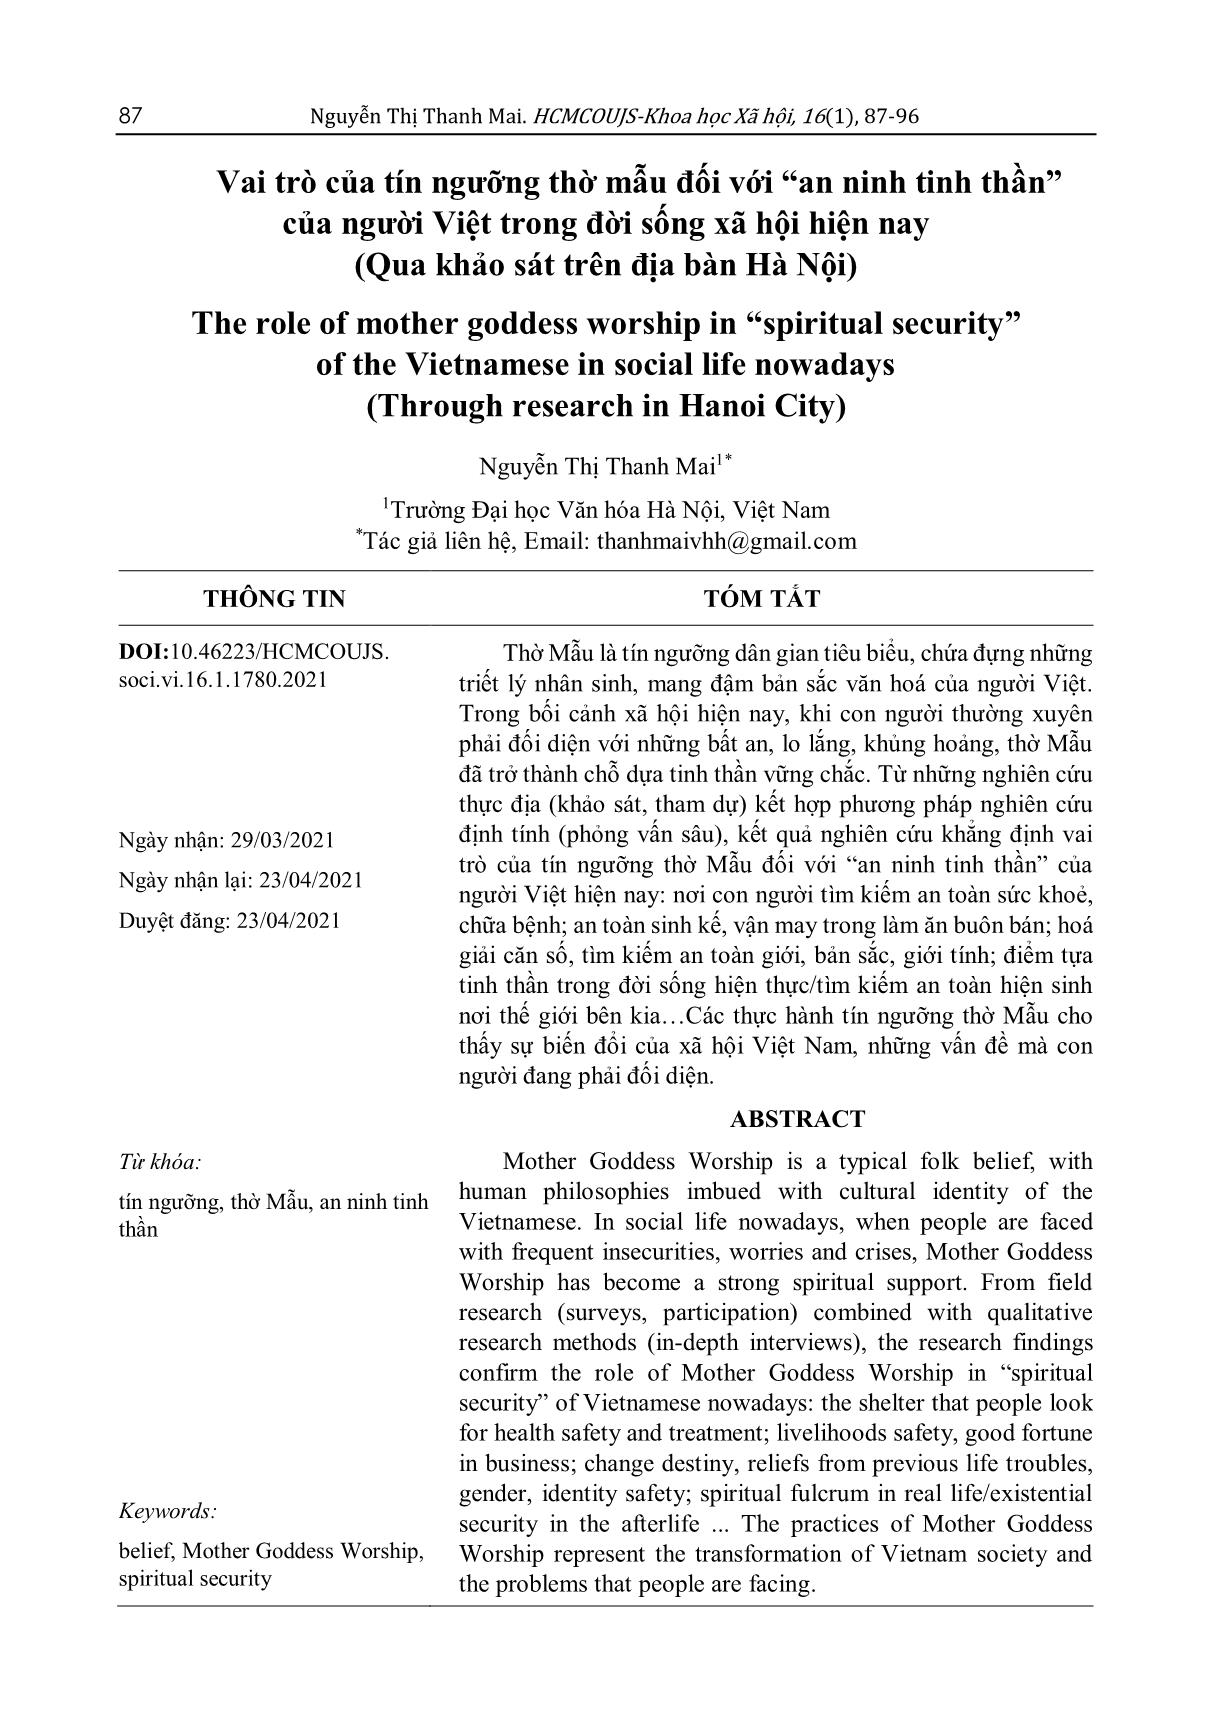 Vai trò của tín ngưỡng thờ Mẫu đối với “an ninh tinh thần” của người Việt trong đời sống xã hội hiện nay (Qua khảo sát trên địa bàn Hà Nội) trang 1